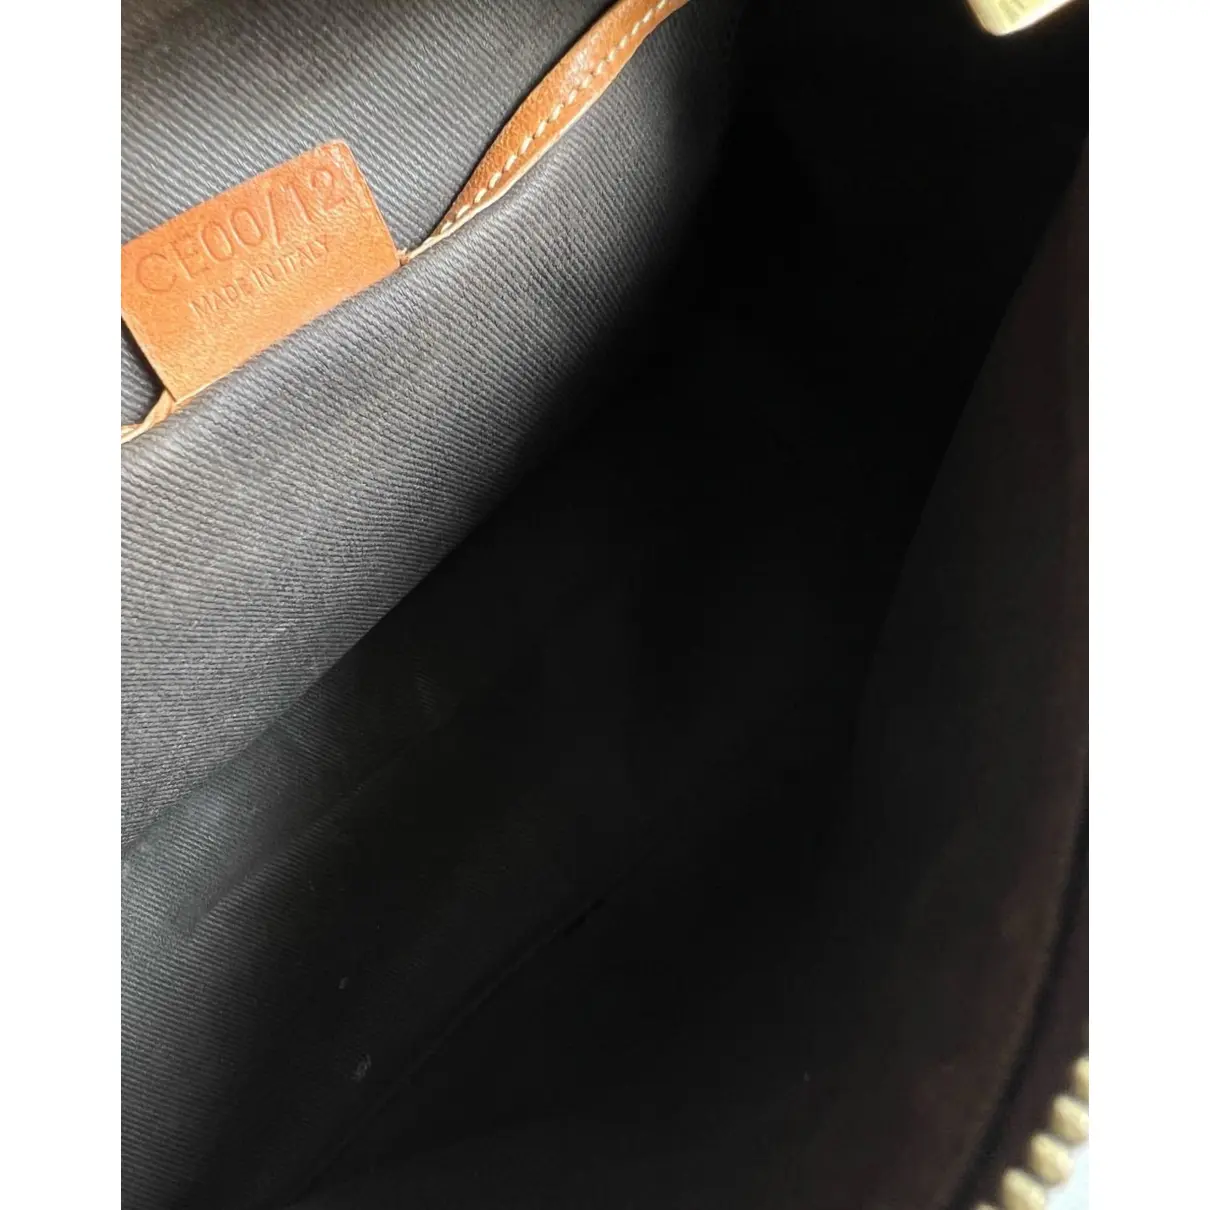 Triomphe Vintage leather handbag Celine - Vintage